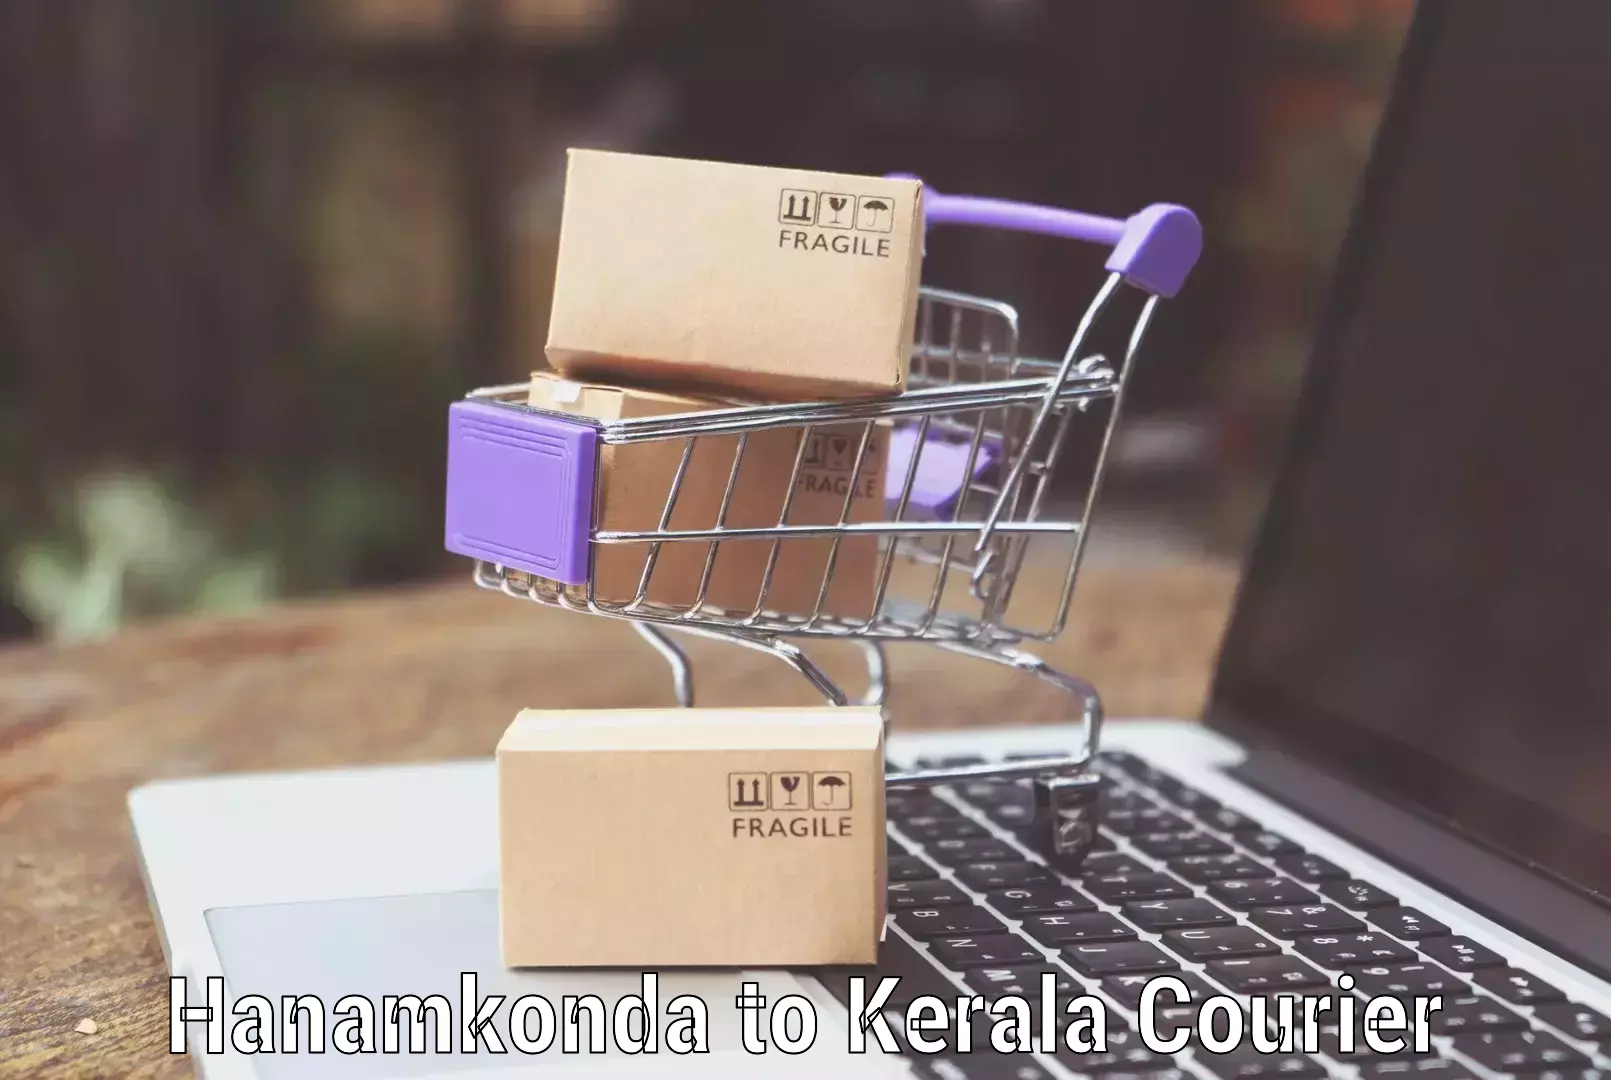 Digital baggage courier in Hanamkonda to Kerala